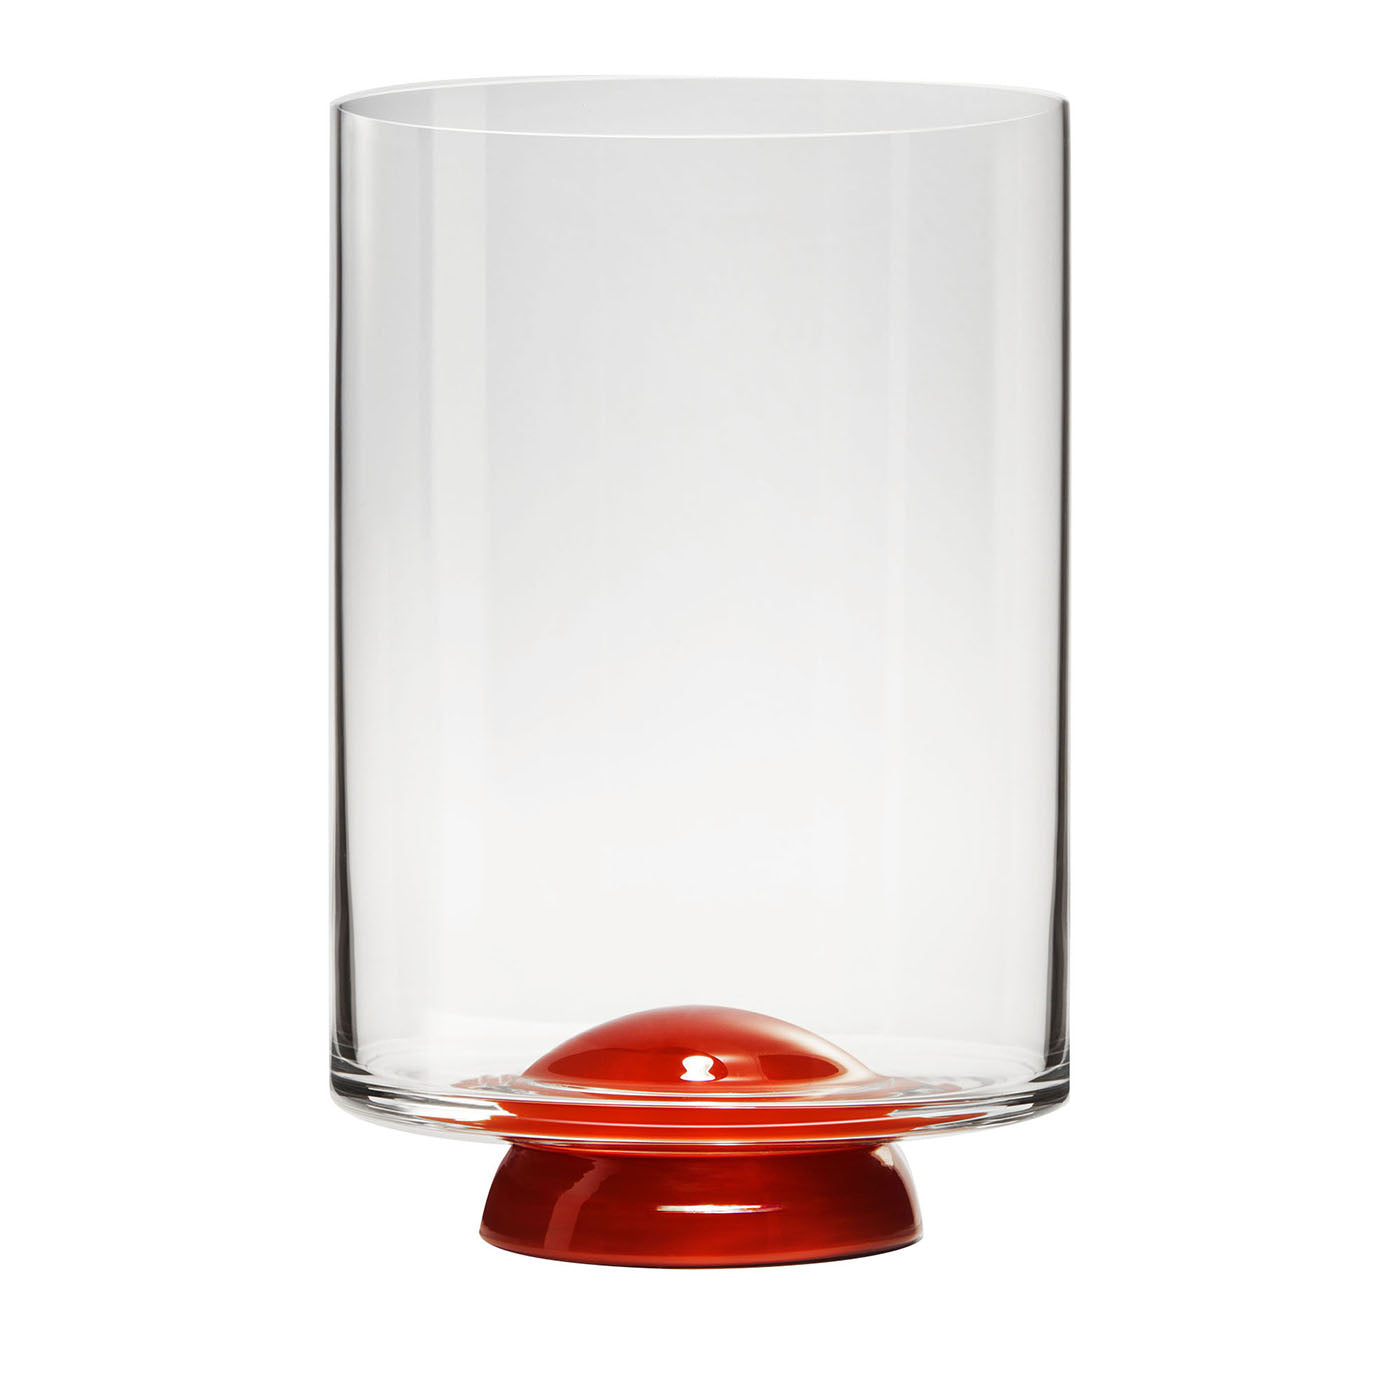 Rotes und transparentes Wasserglas von Giovanni Patalano (Punkt) - Hauptansicht